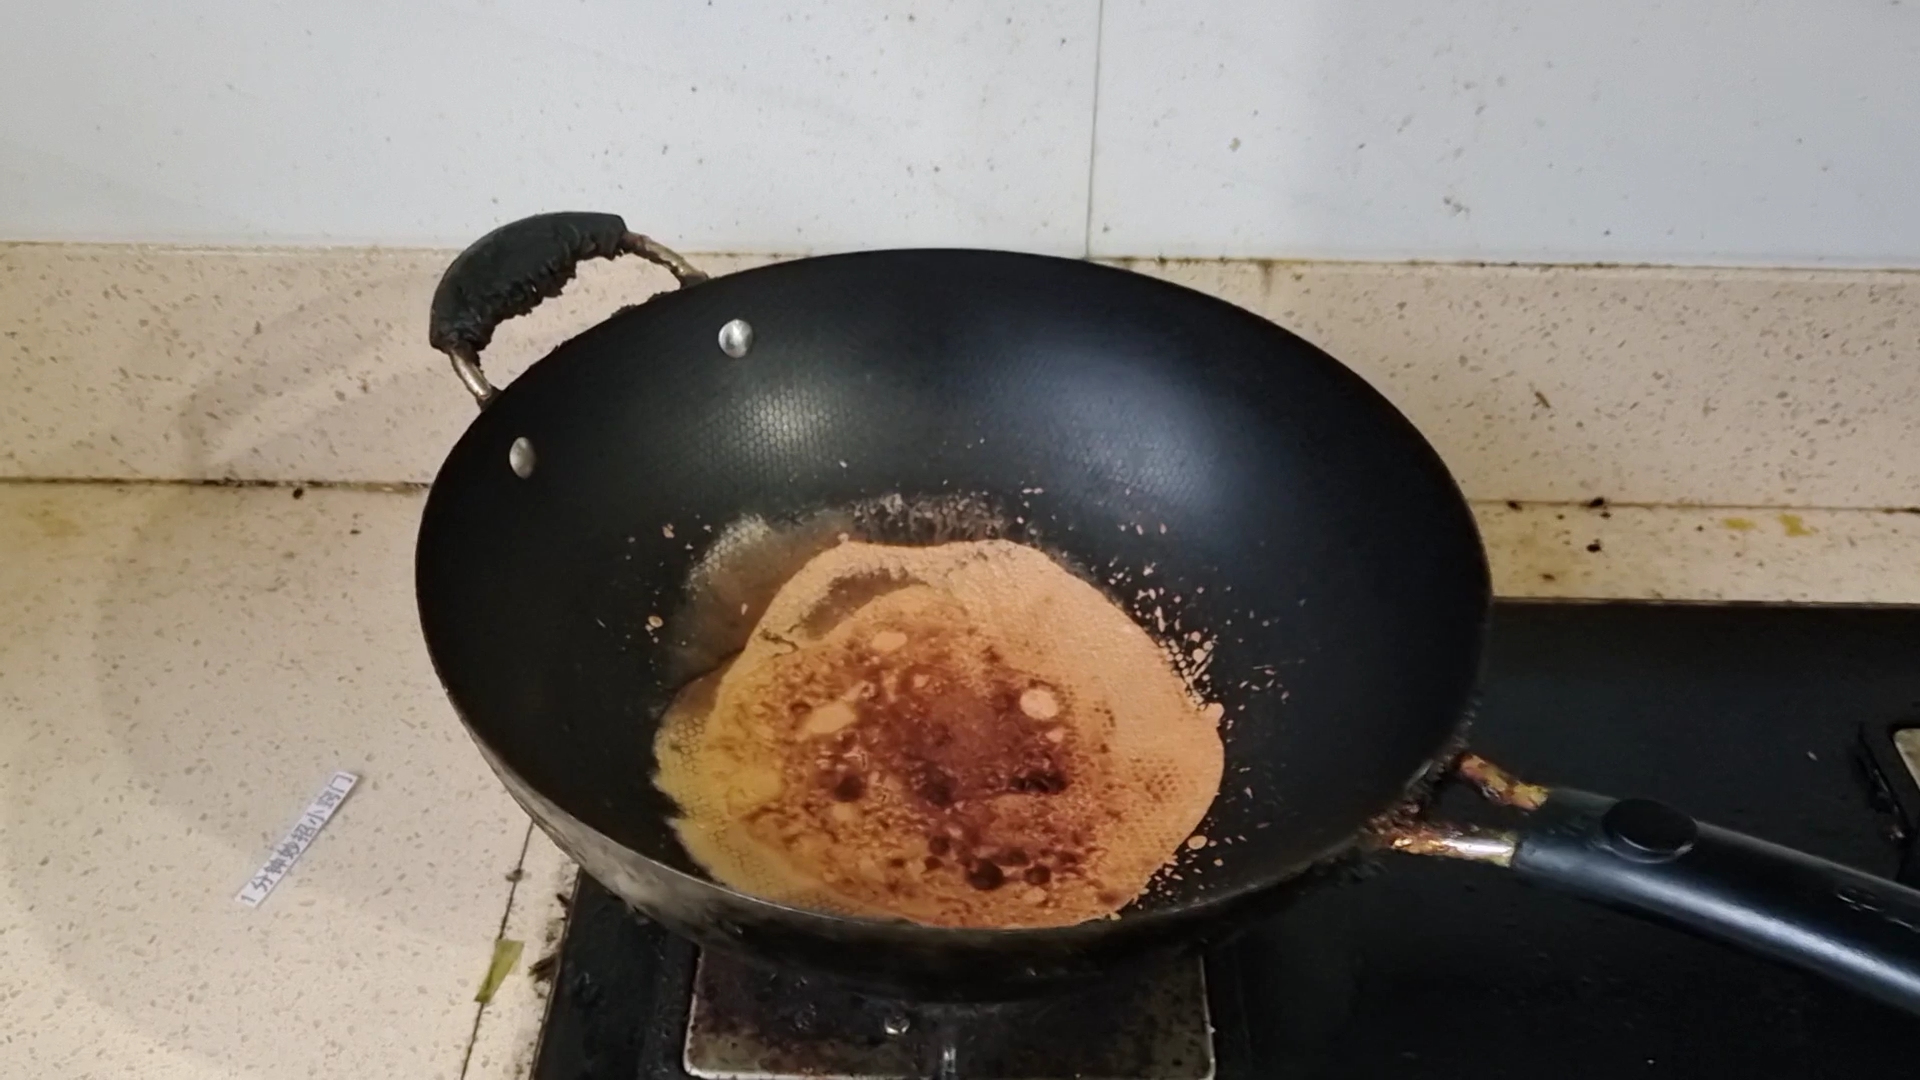 解决铁锅生锈问题的简便高效清洁方案分享：小苏打+洗洁精+白醋的神奇组合